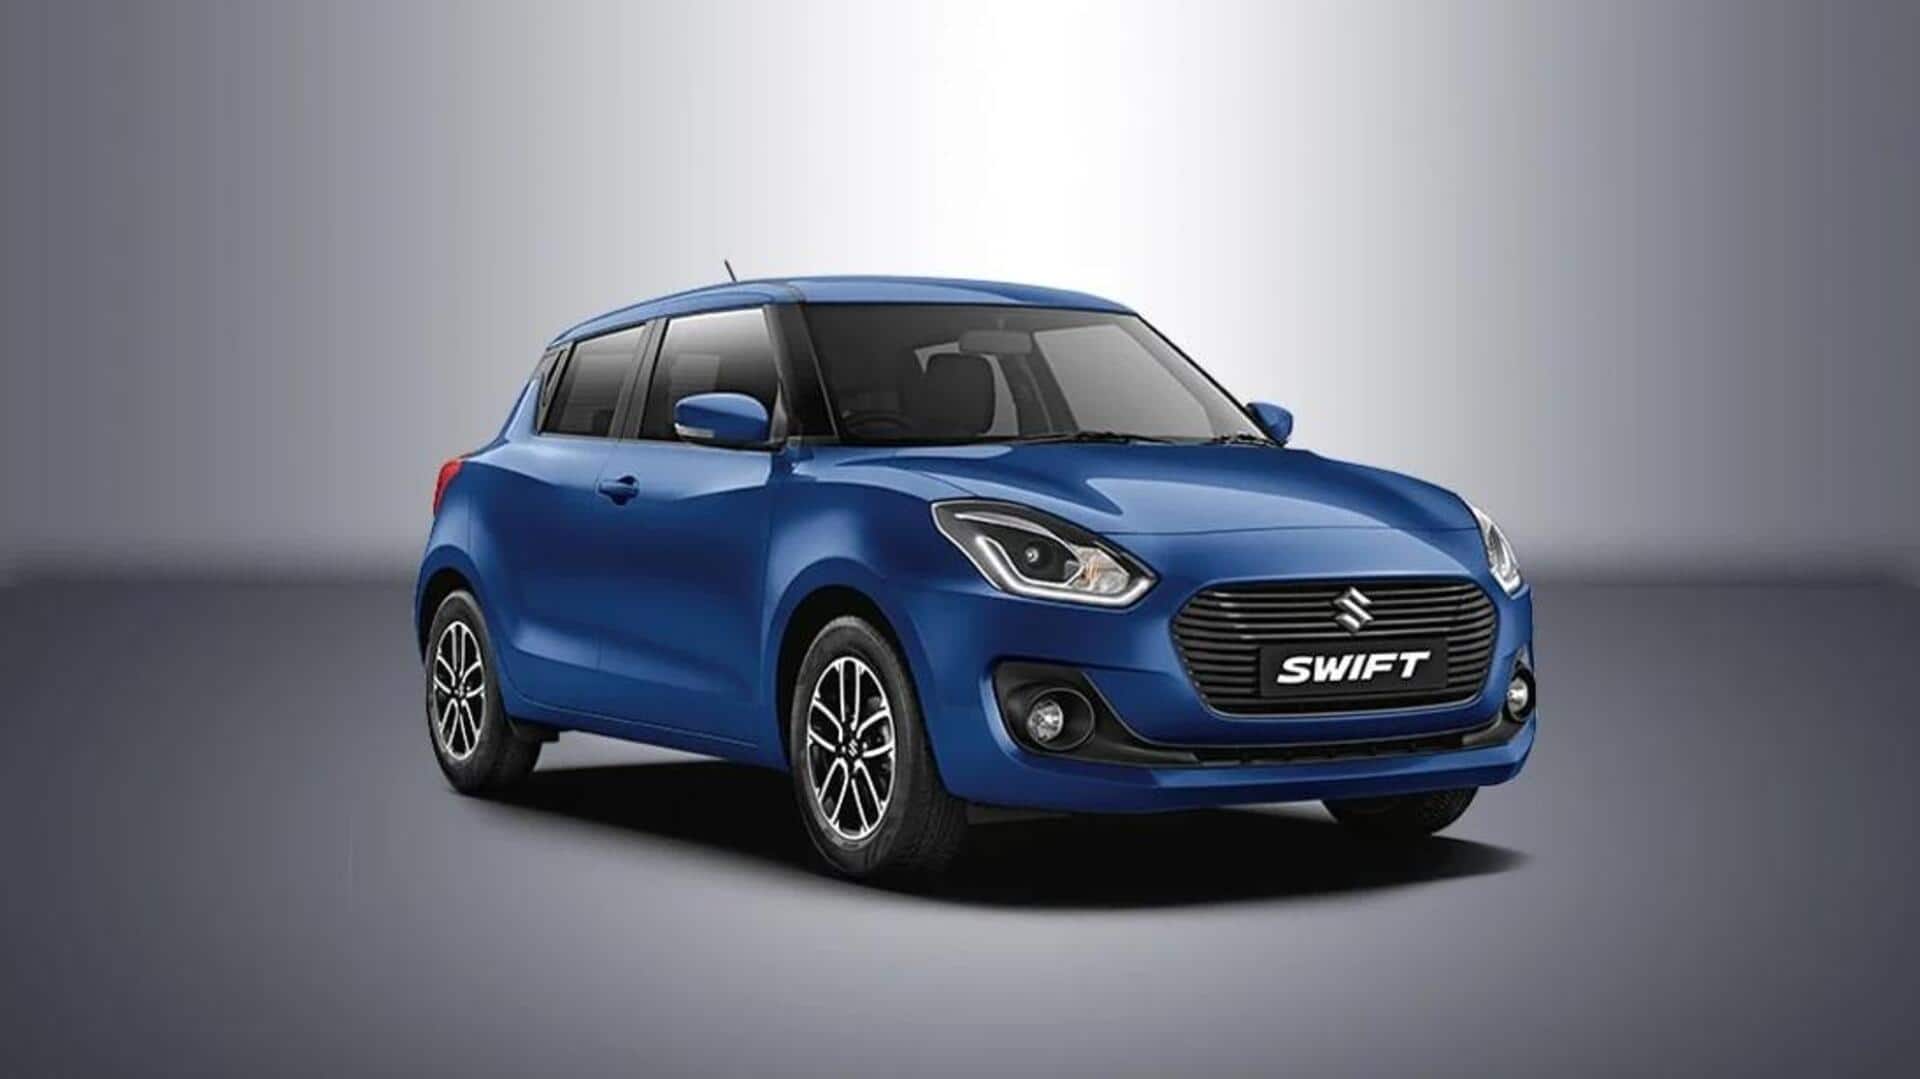 Attractive year-end discounts being offered on Maruti Suzuki Swift